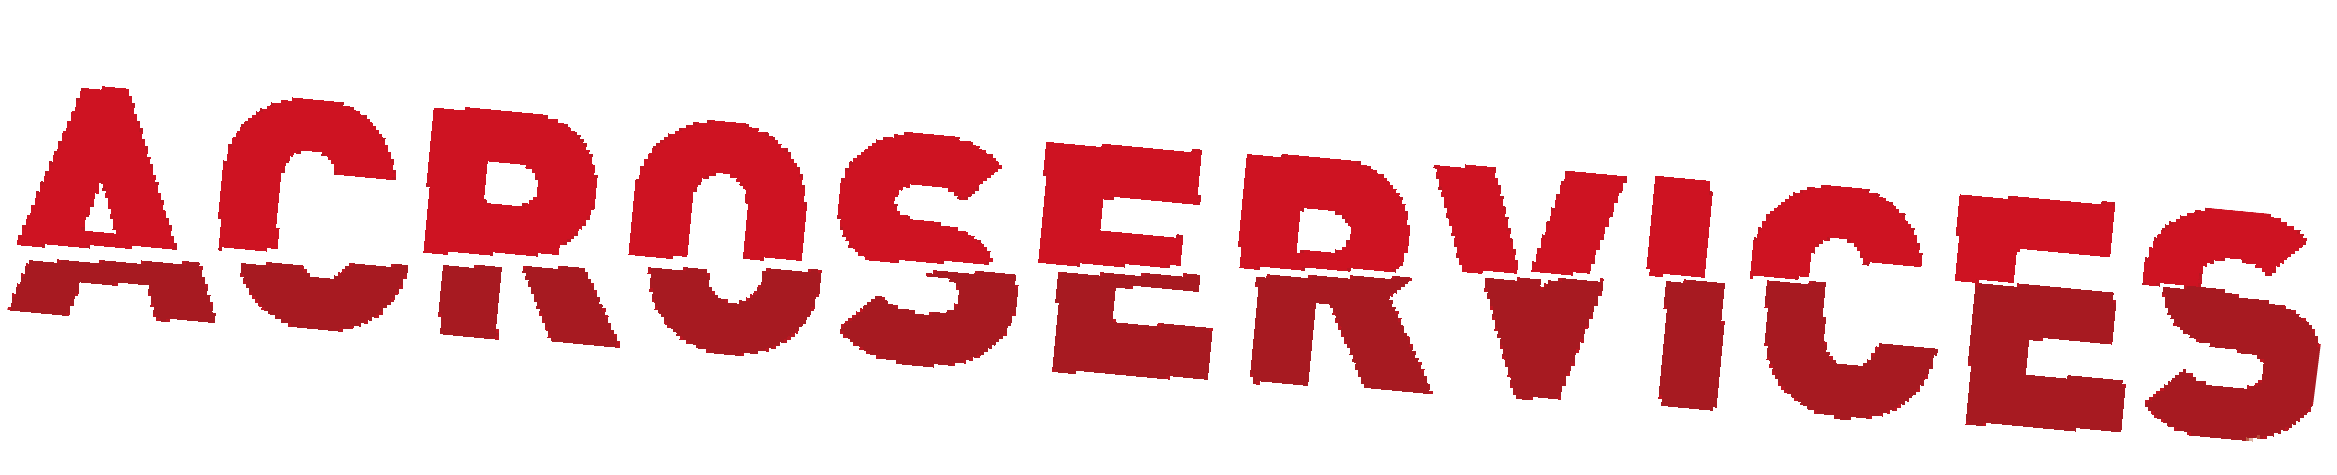 acro service logo